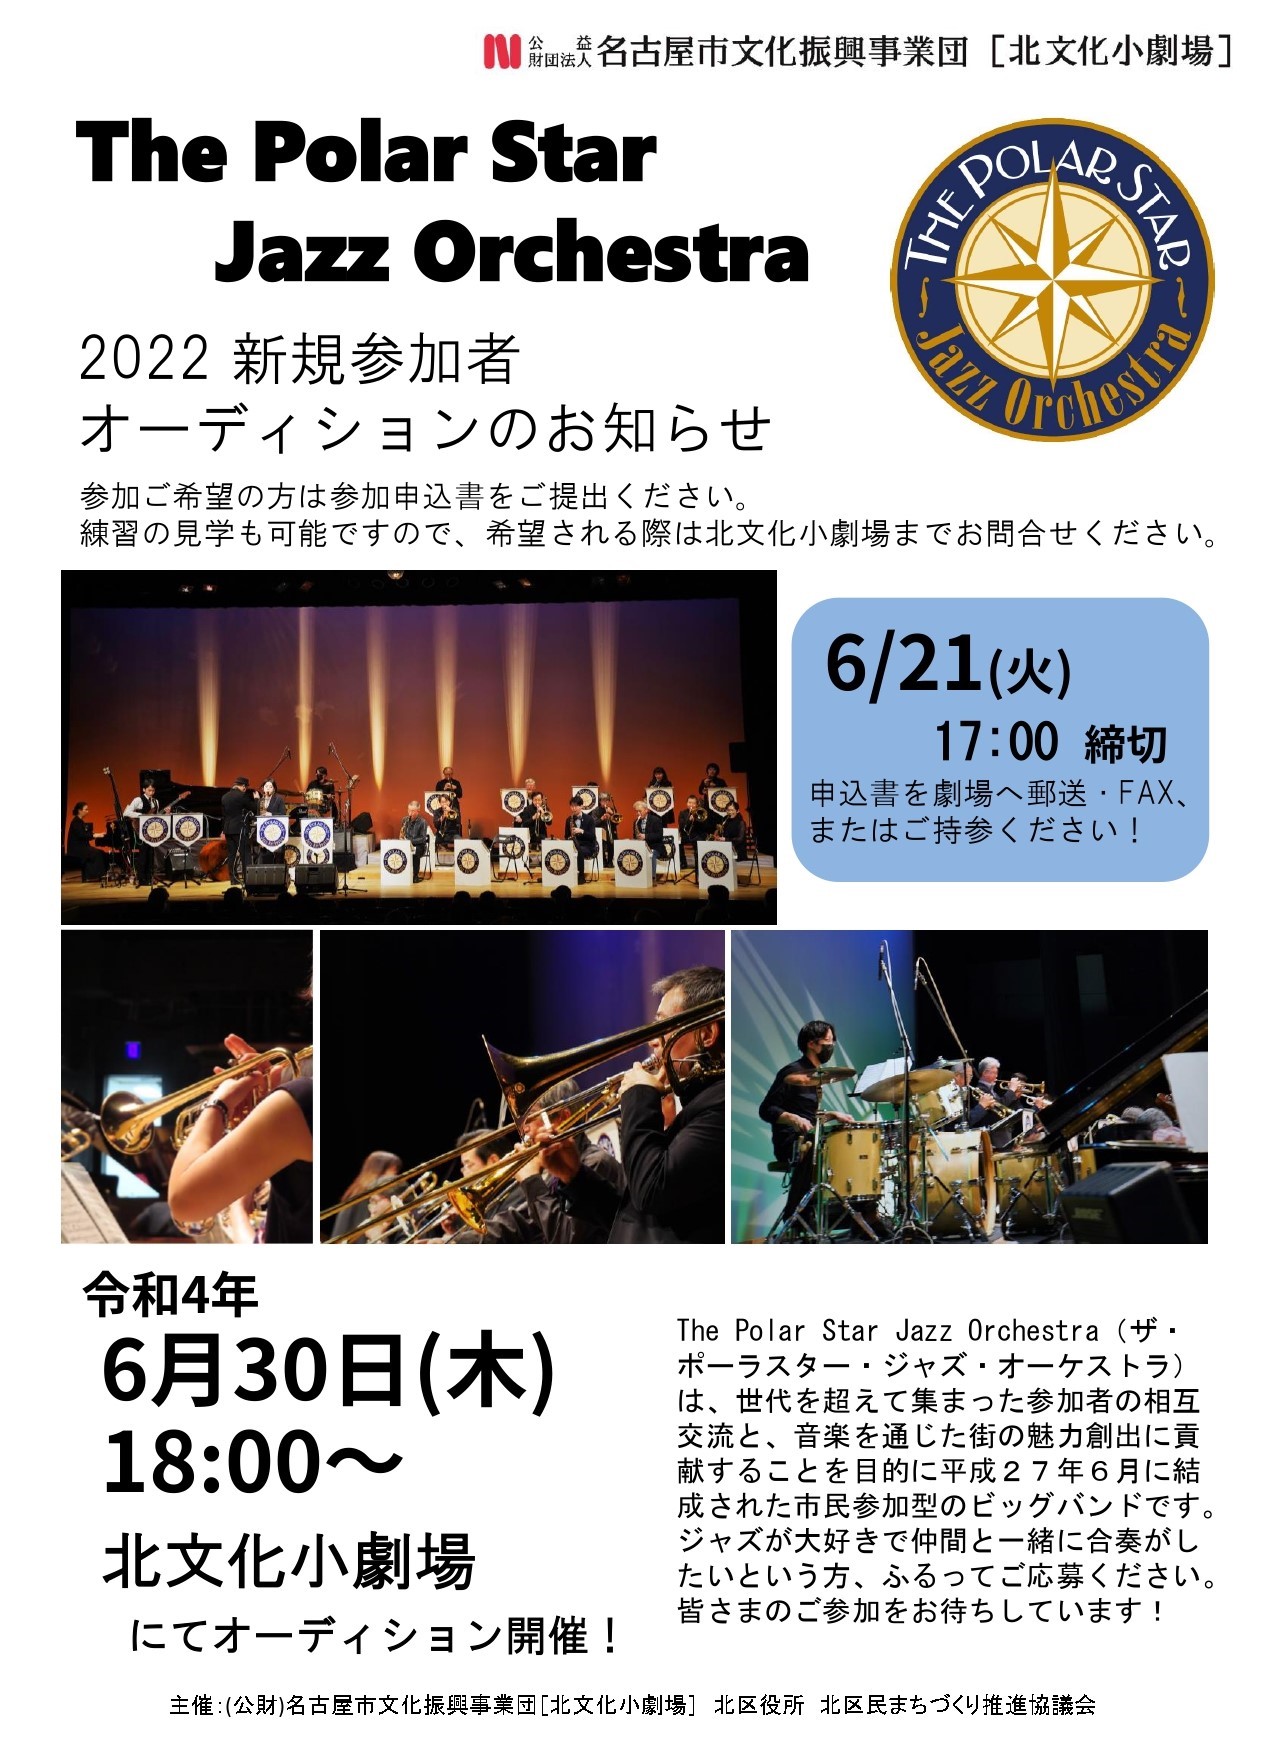 The Polar Star Jazz Orchestra 2022 新規参加者オーディションのチラシ